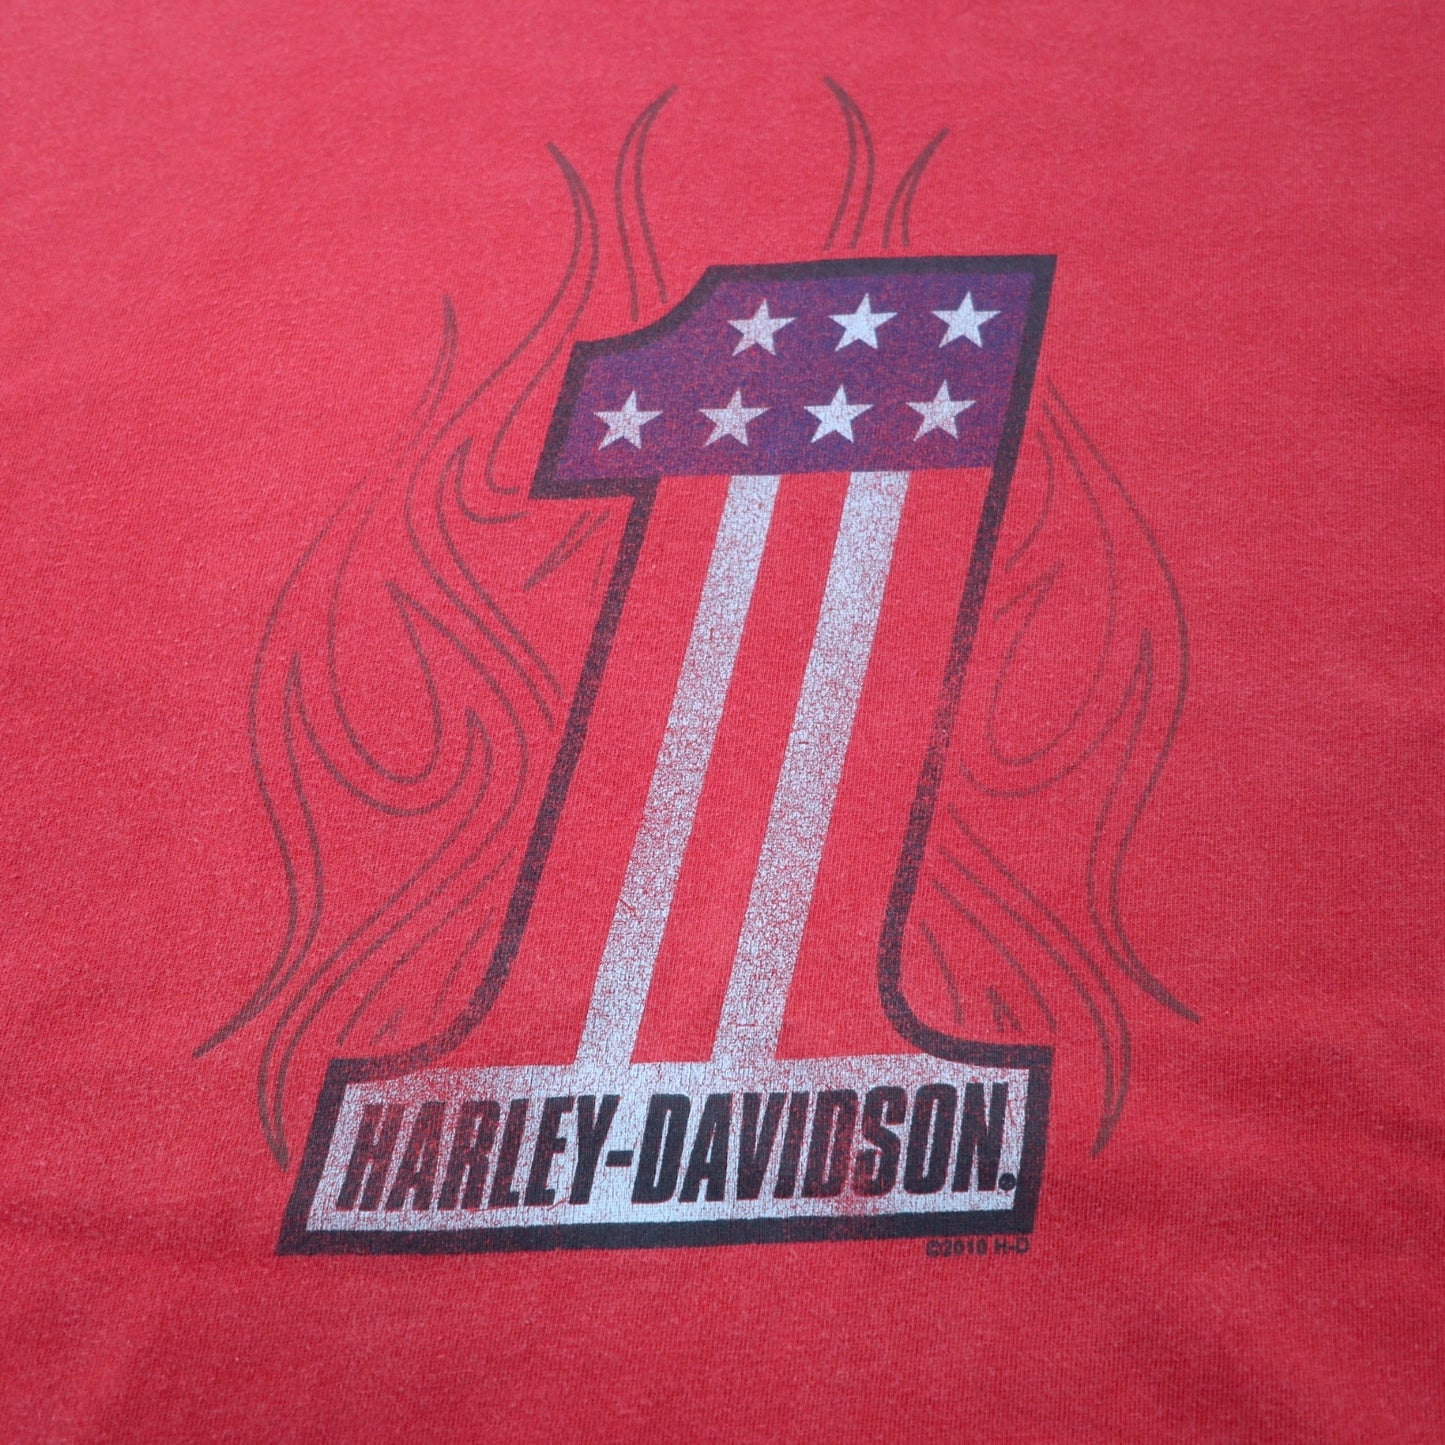 HARLEY DAVIDSON ナンバーワン プリント Tシャツ XL レッド コットン ALBANY GEORGIA ビッグサイズ